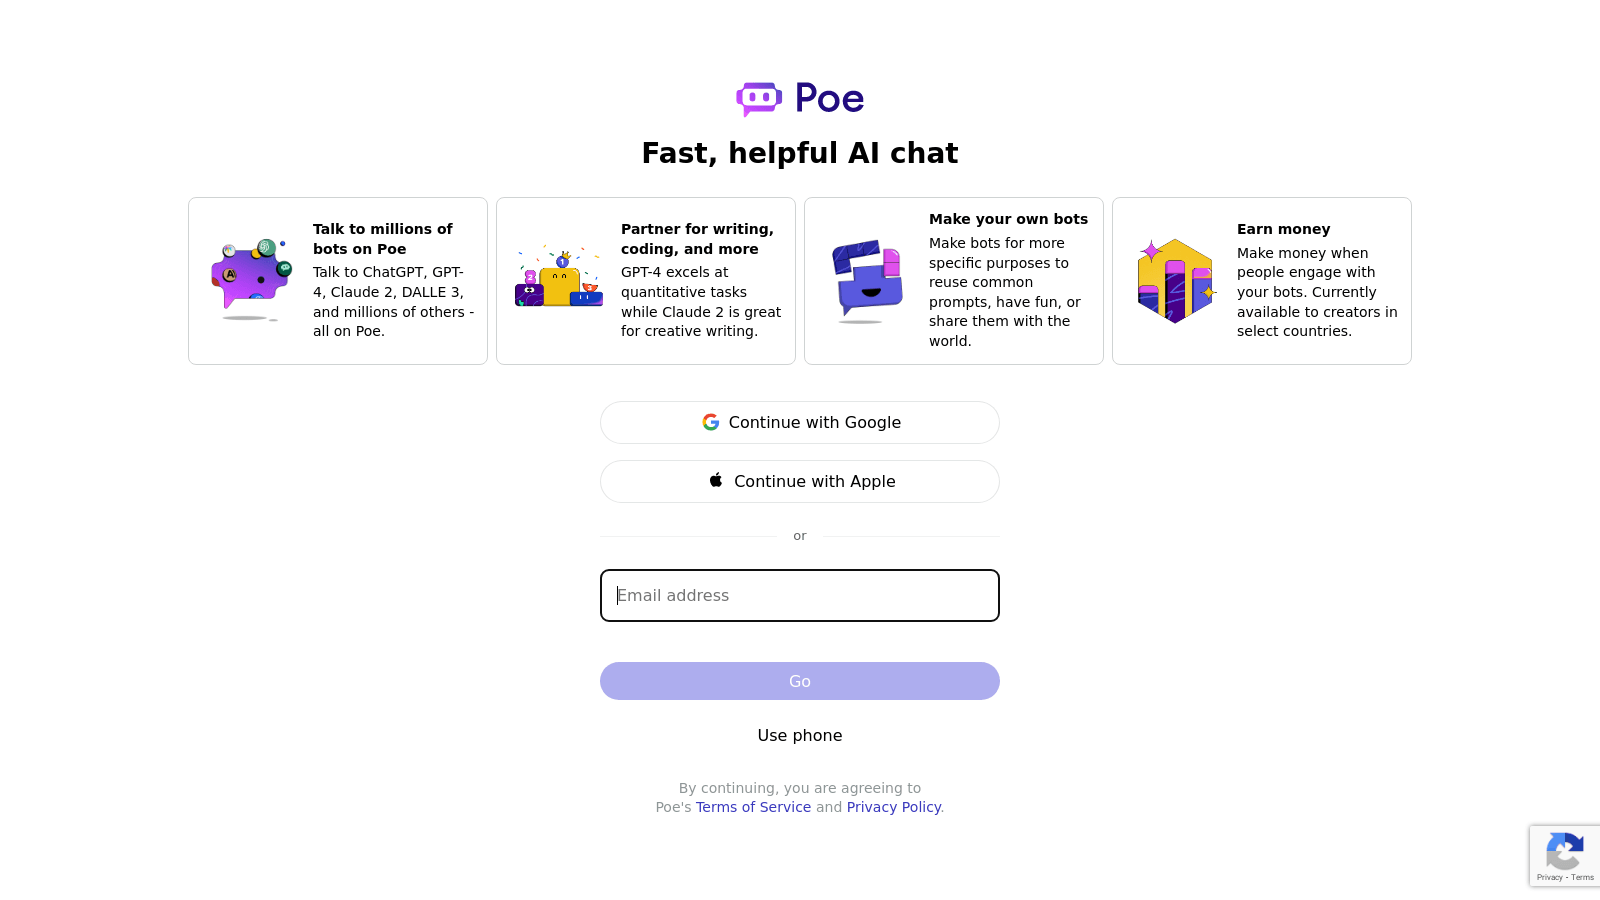 poe.com